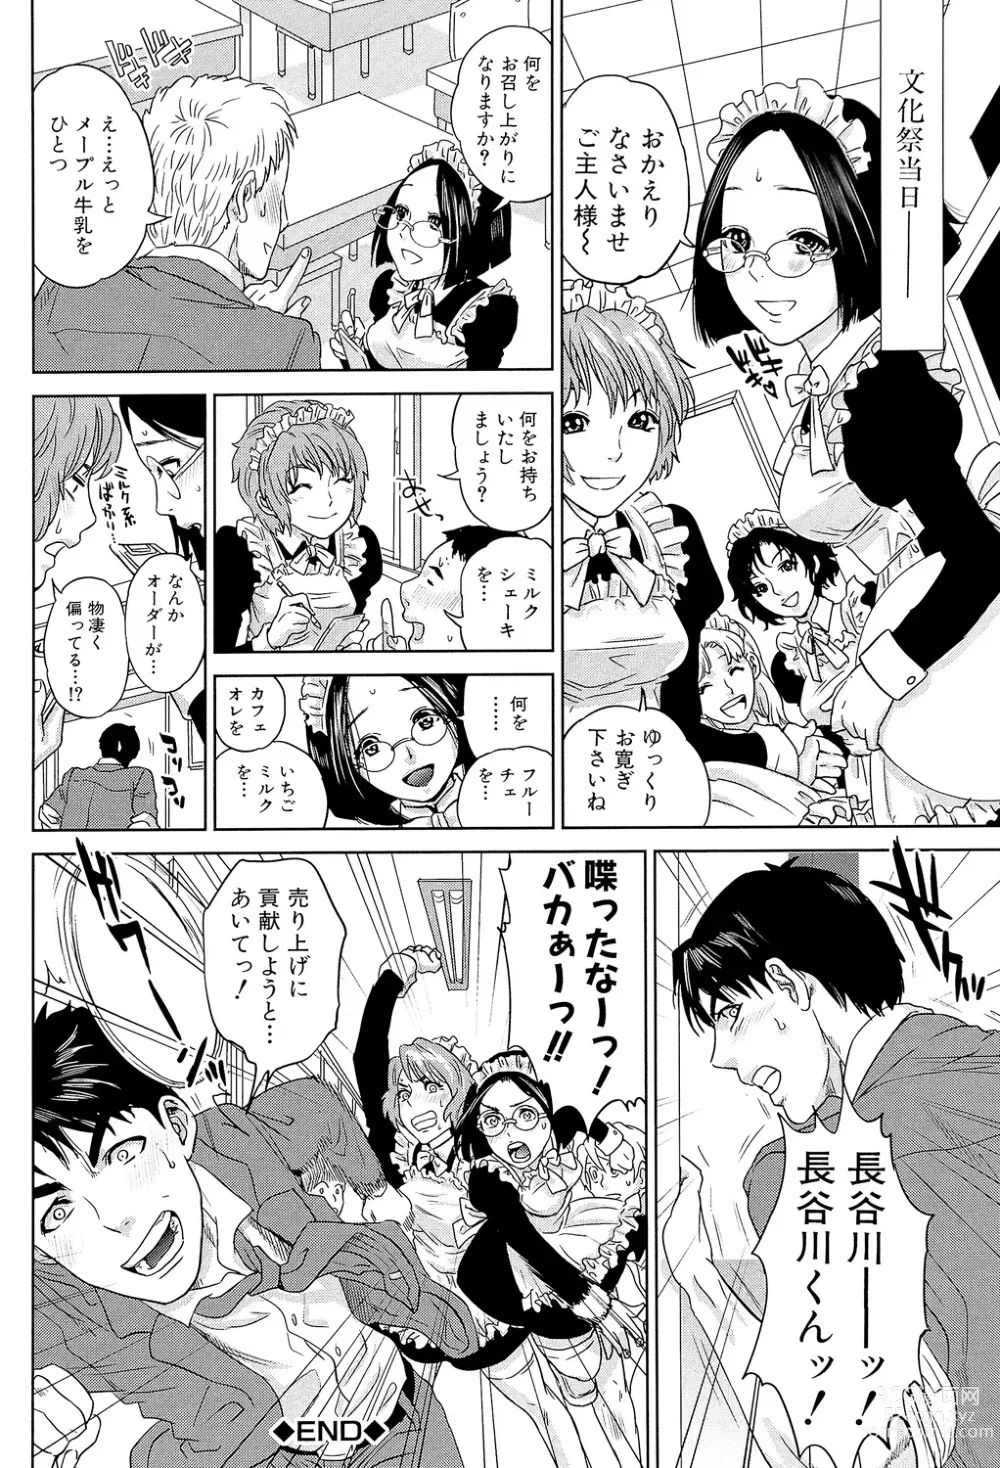 Page 204 of manga Boku-tachi no Kinki